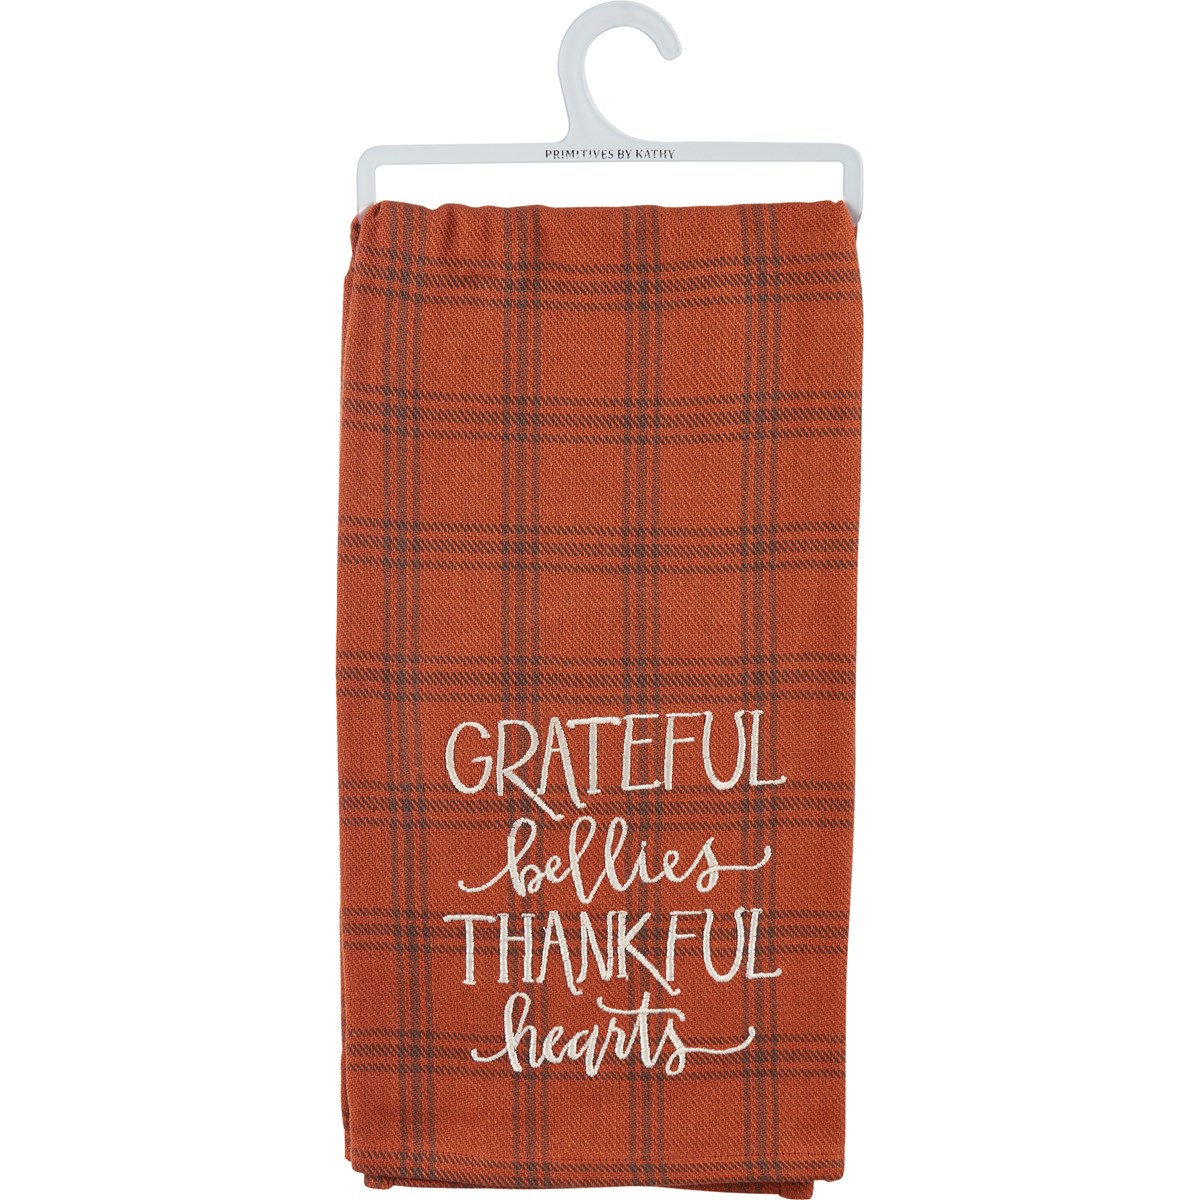 Kitchen Towel - Grateful Bellies - 20" x 28" - Cotton